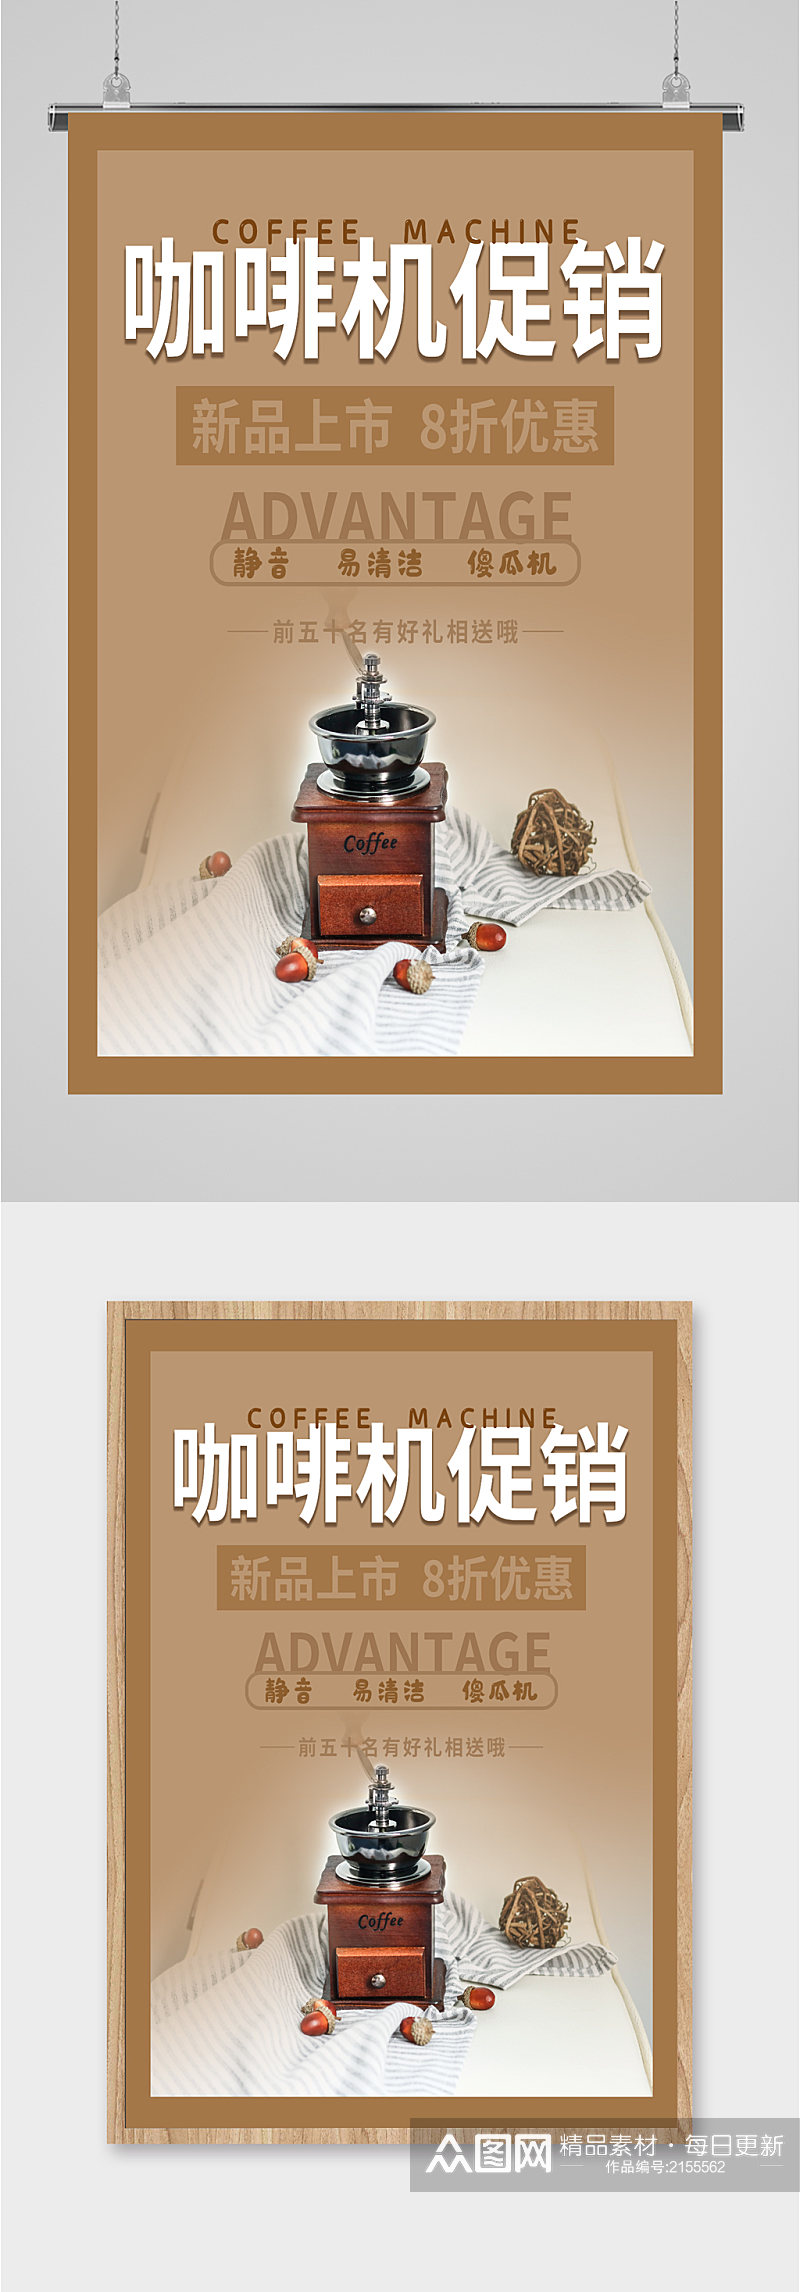 咖啡机全自动促销海报素材